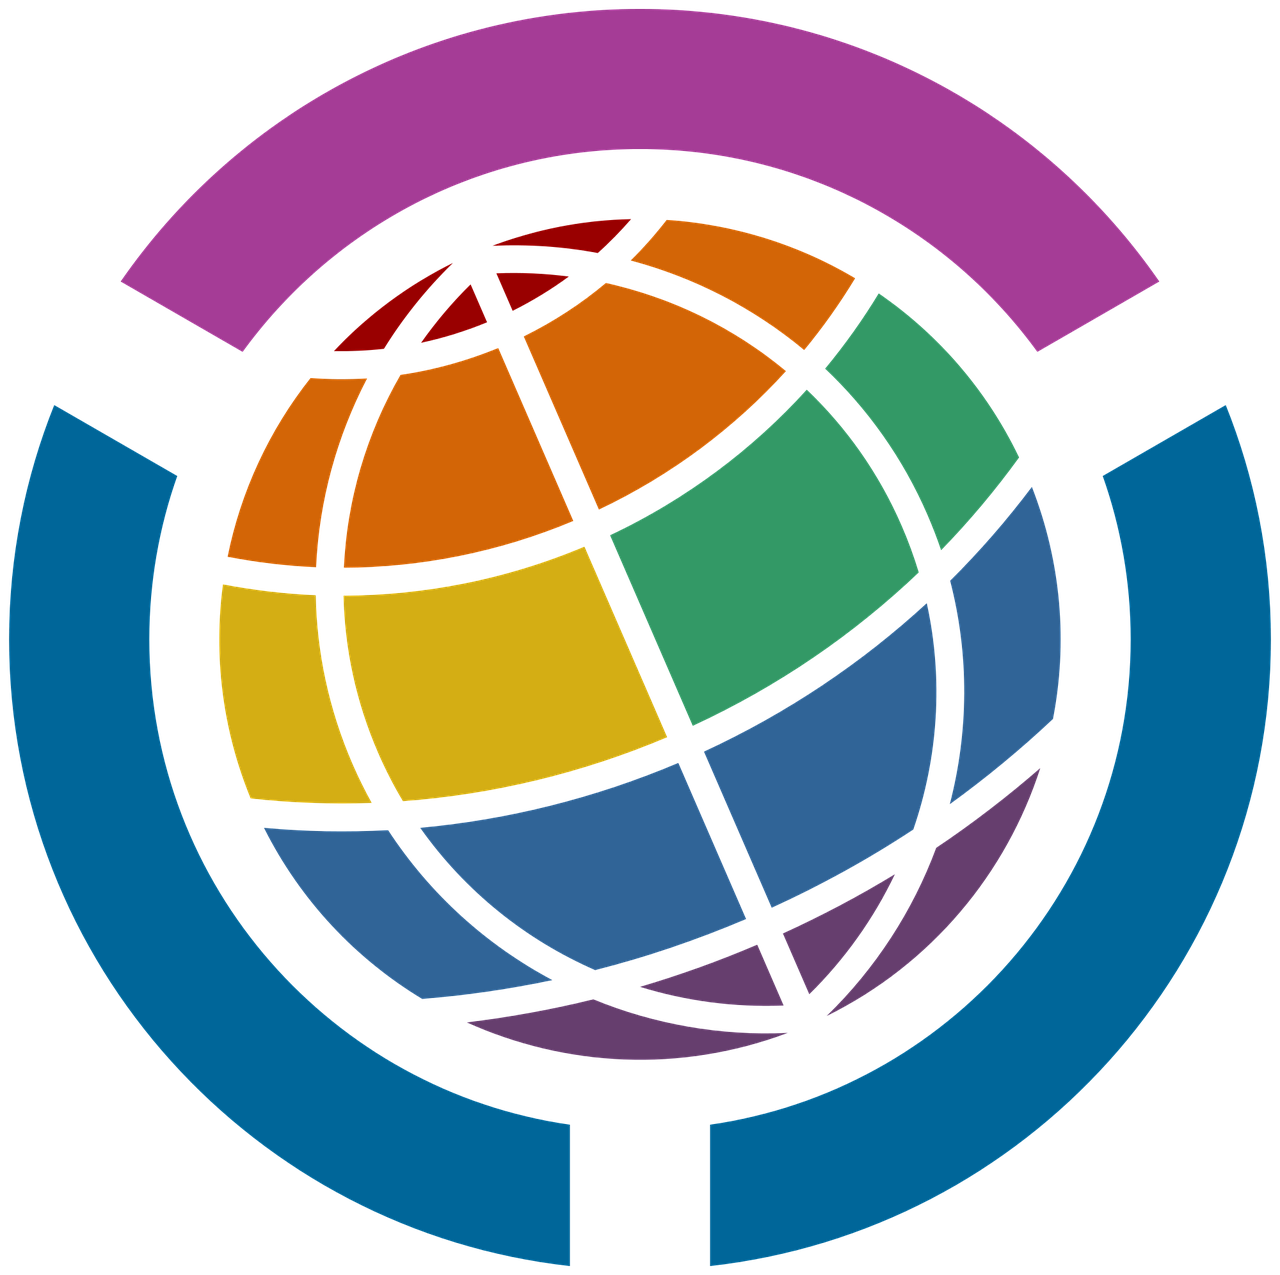 Wikimedia Bendruomenės Logotipas Lgbt, Parama, Simbolis, Veikla, Susijusi Su Bendruomene, Lesbiečių, Gėjus, Biseksualus, Transseksualai, Glbt